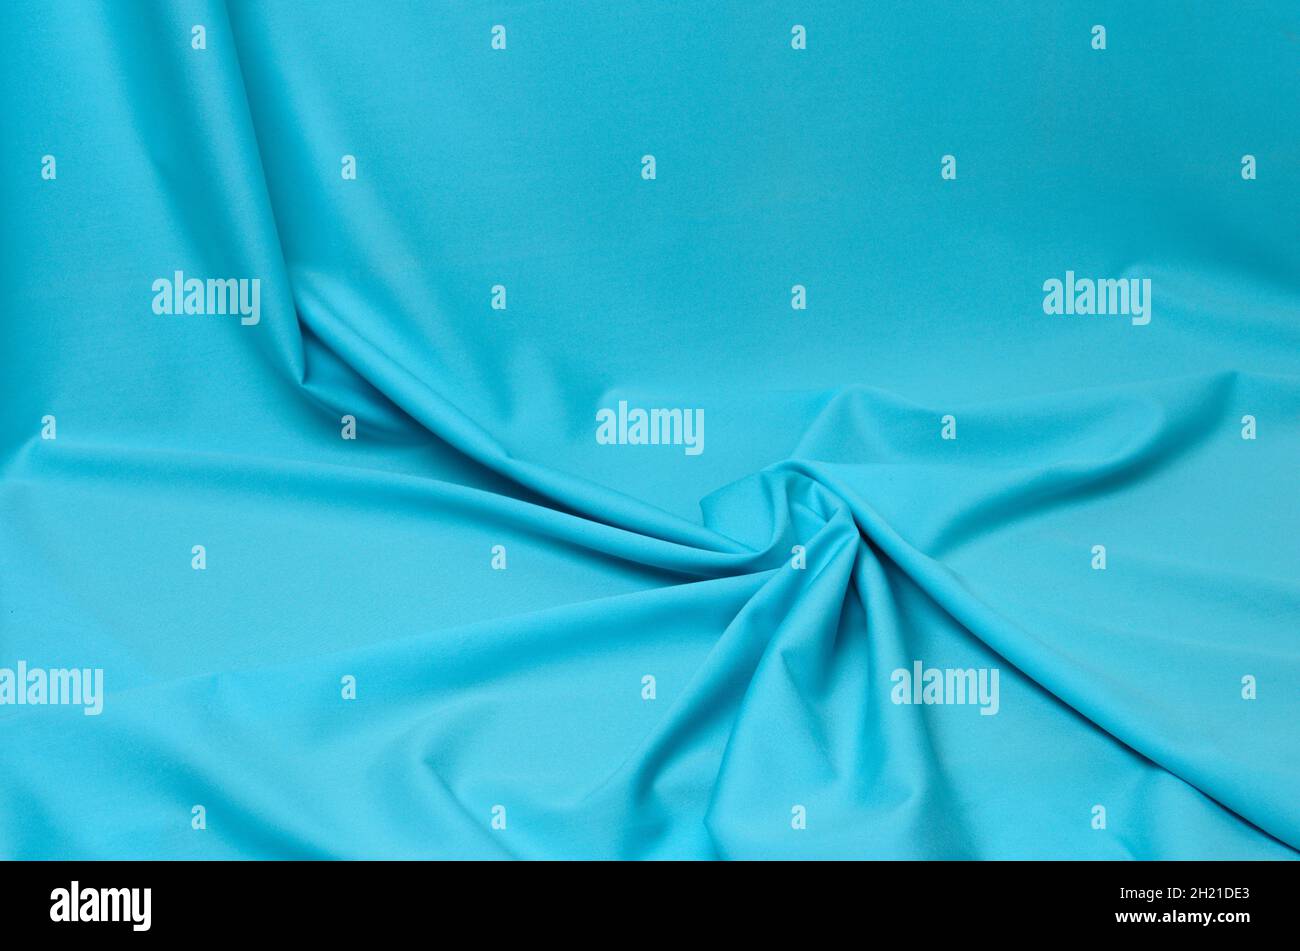 Fondo texturizado de tejido azul suave con pliegues elegantes. Enfoque selectivo. Foto de stock